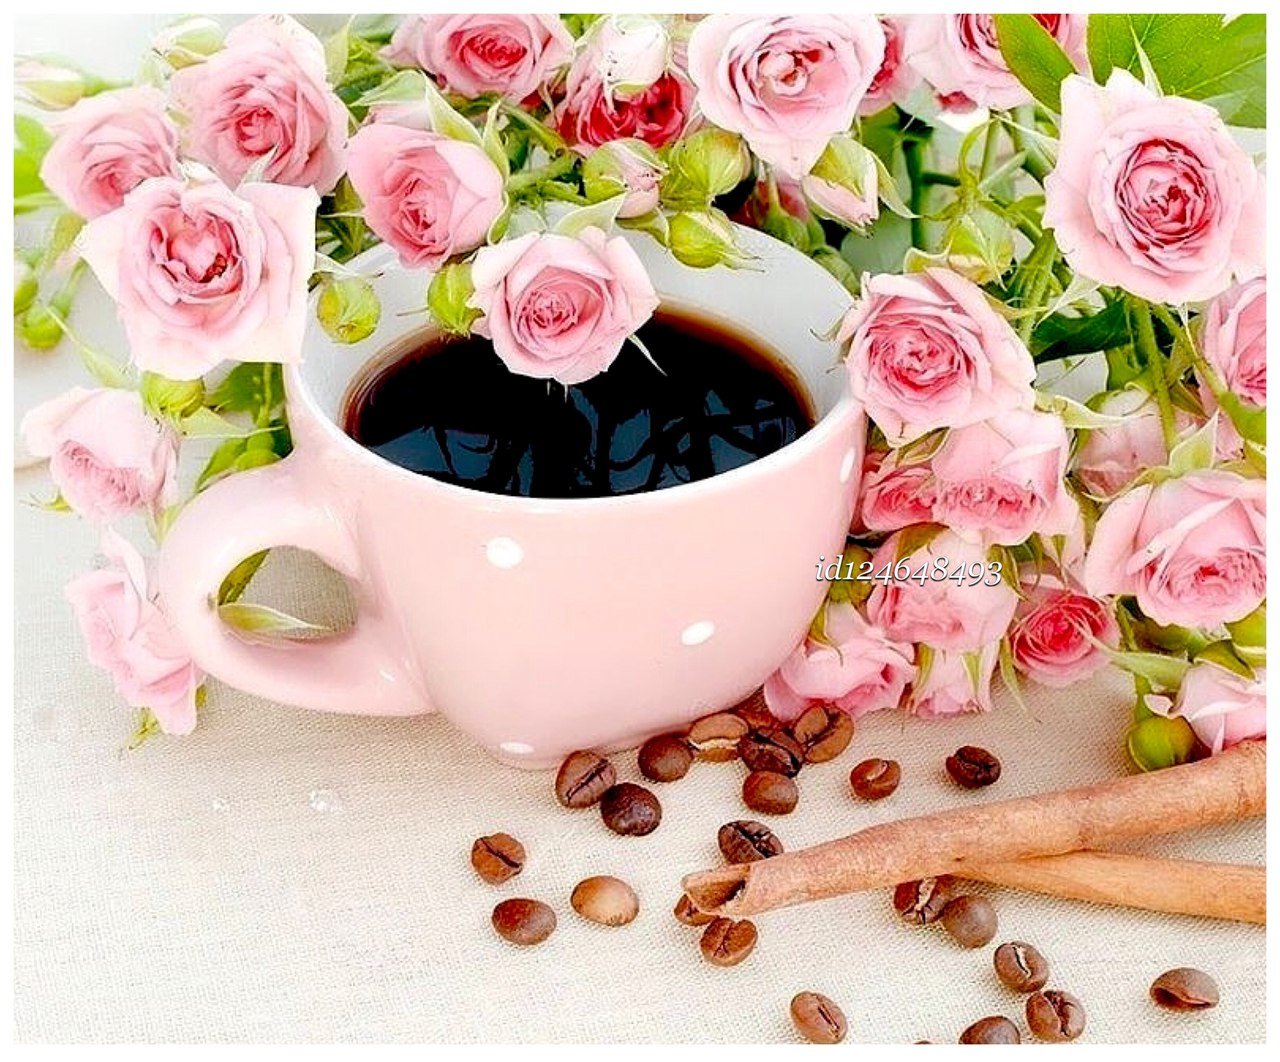 Приветливое утро. Кофе и цветы. Кофе и цветы картинки. Прекрасного утра. Утро цветы.